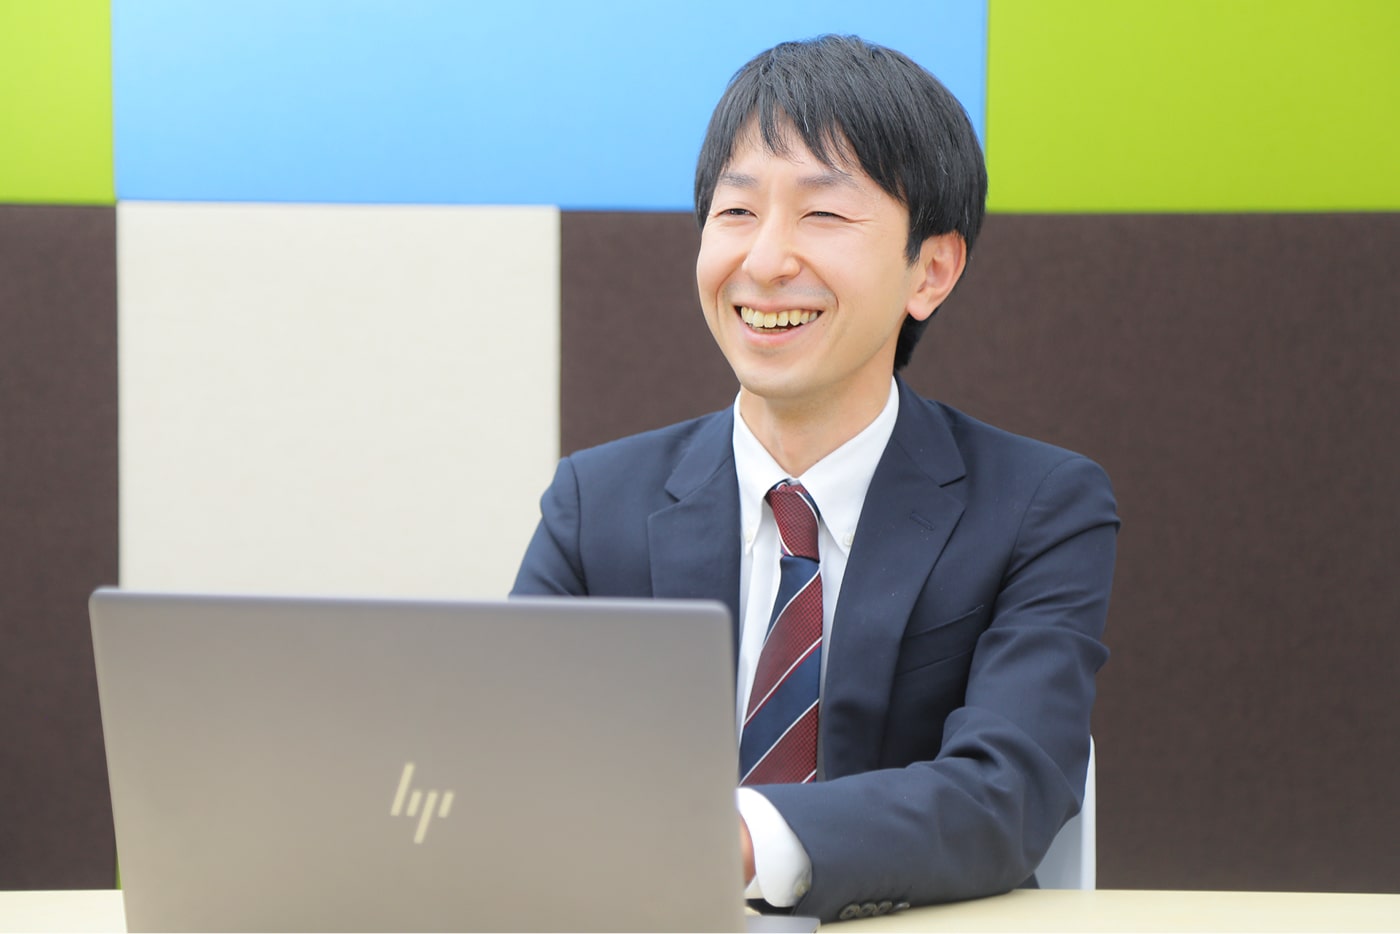 ESRI Japan Platform Product Group, GIS Product Specialist, Nobuyuki Tanaka